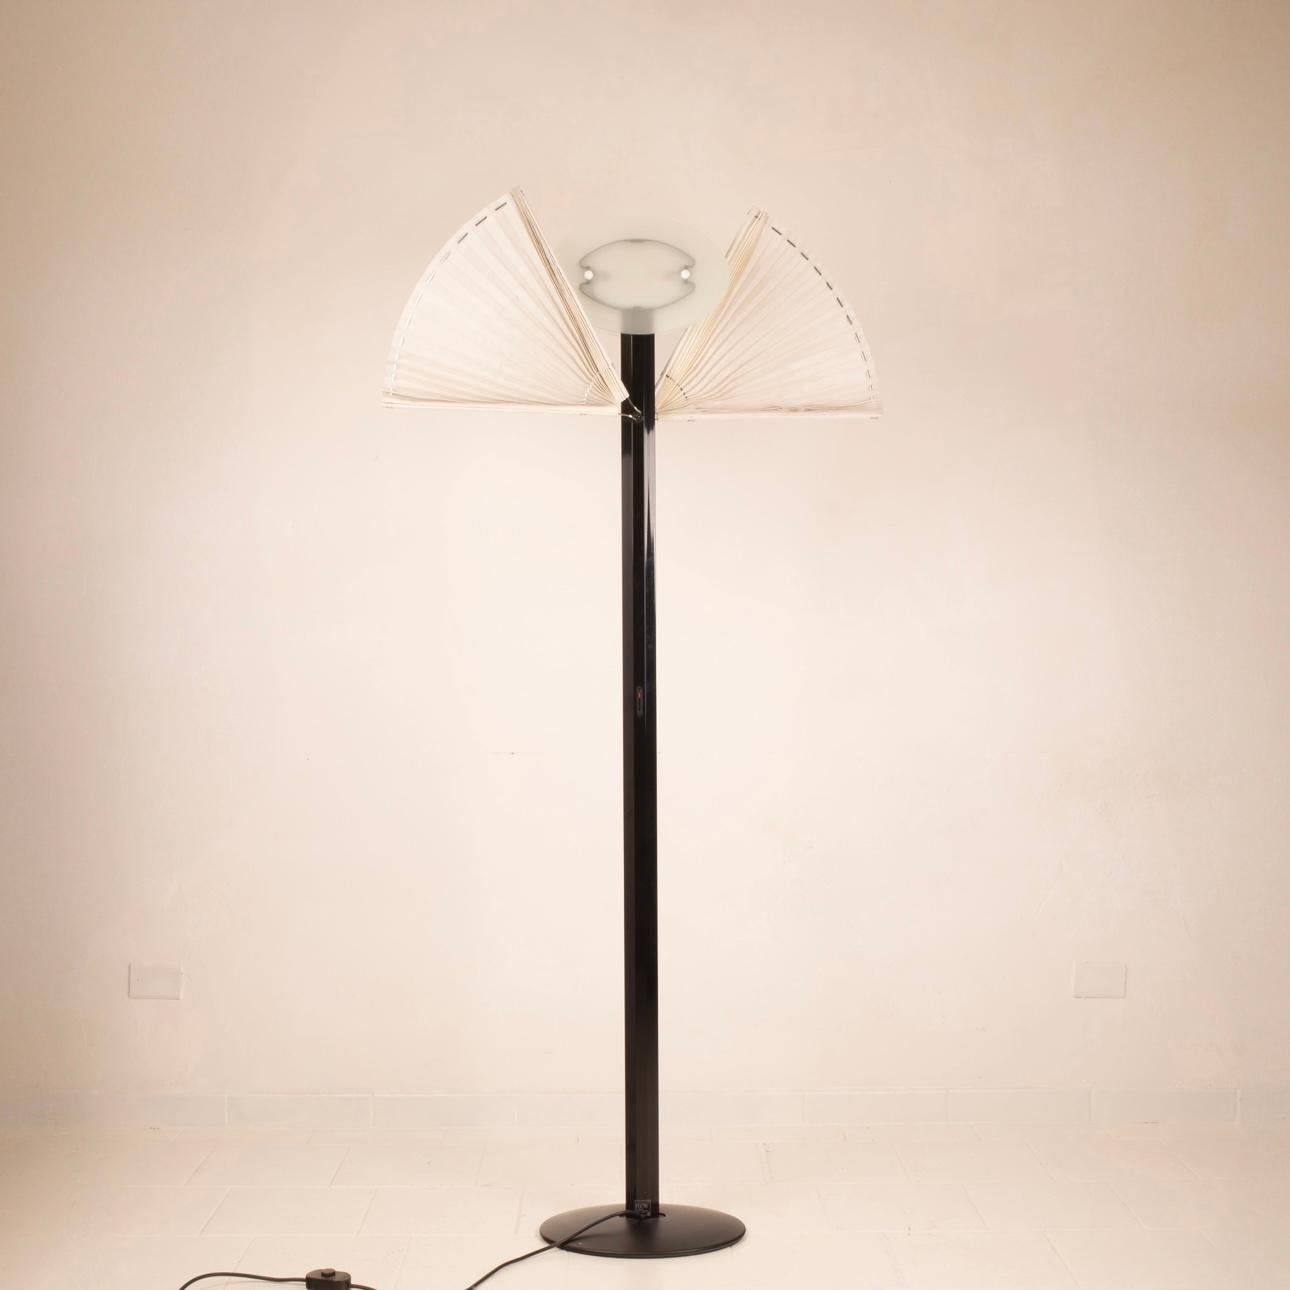 Superbe lampadaire conçu par Afra & Tobia Scarpa pour la société italienne Flos dans les années 1980, modèle Butterfly.
Tige en aluminium émaillé noir, surmontée d'une lampe halogène à gradation, une paire de vitres en verre gravé entoure et protège